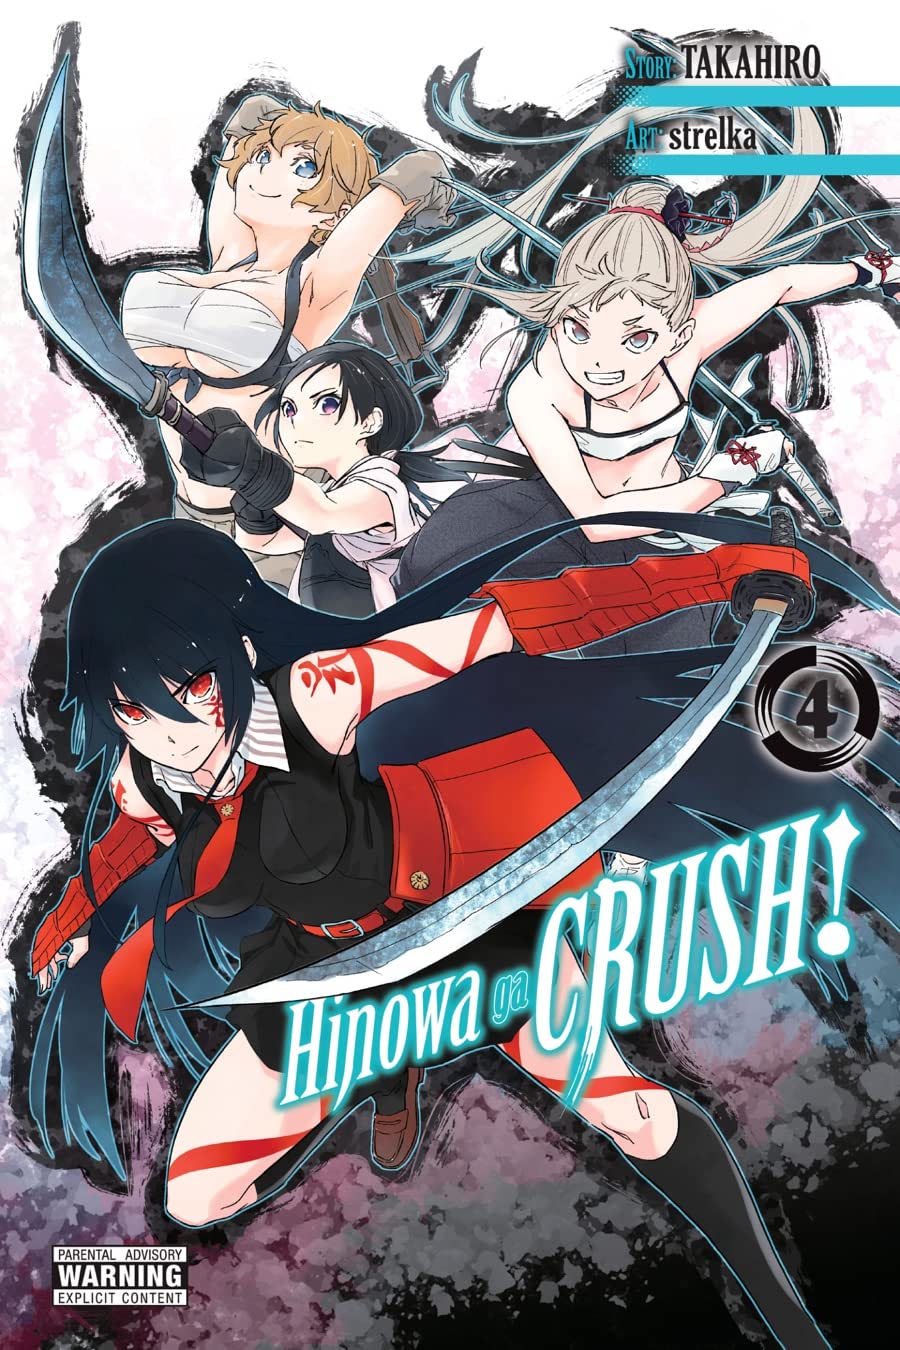 Vezi detalii pentru Hinowa ga Crush! Volume 4 | Takahiro